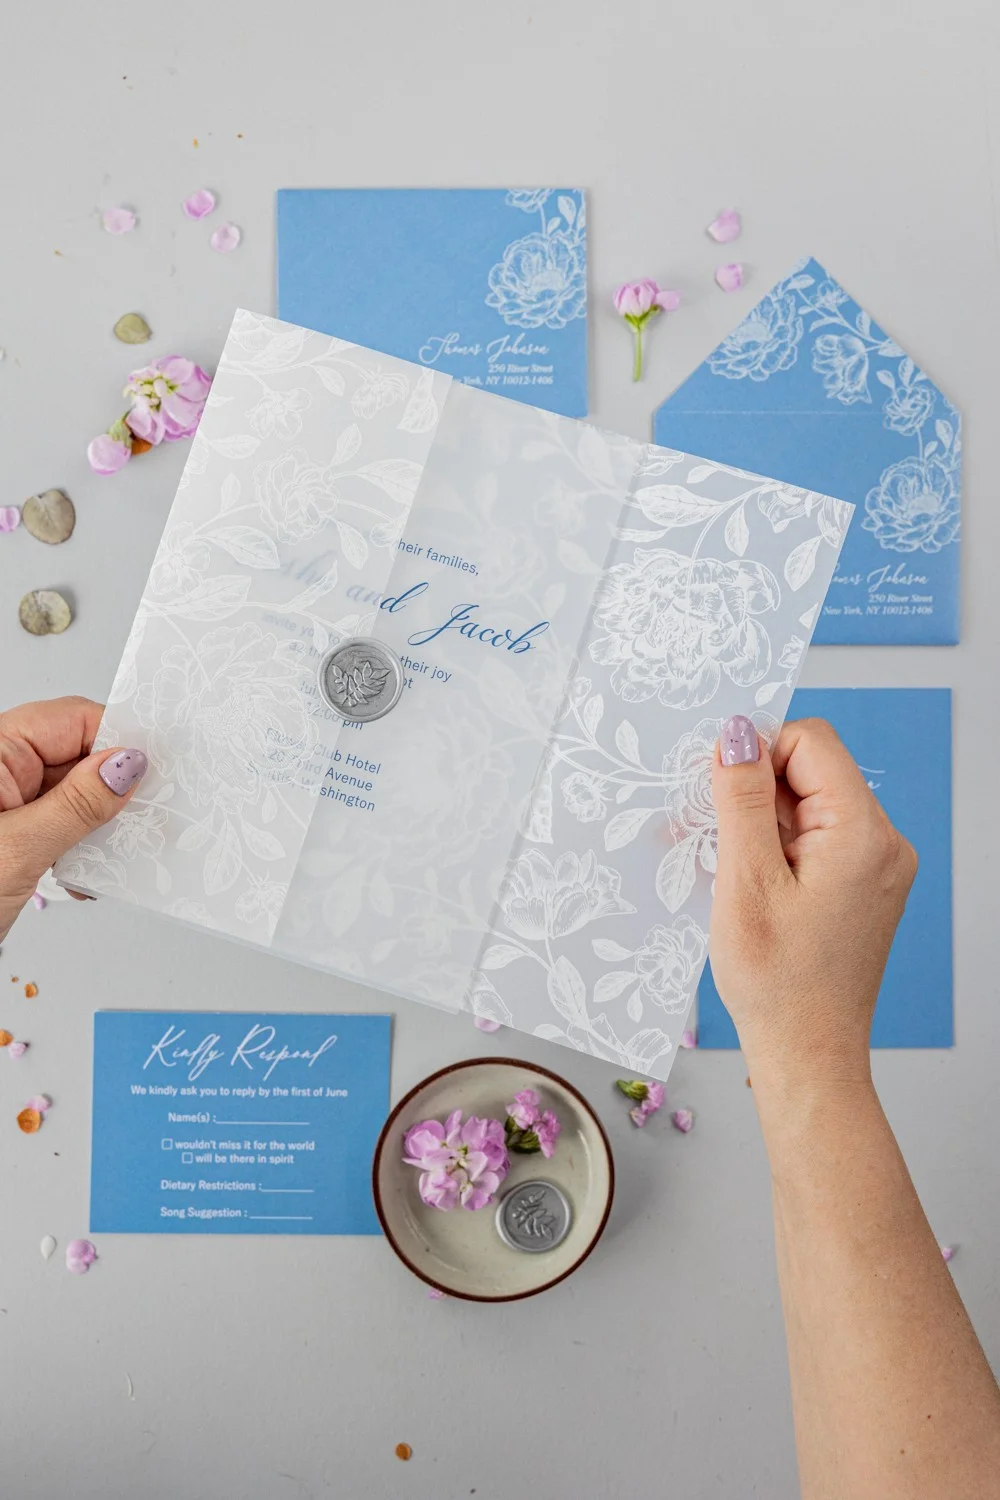 Acryl Hochzeitseinladung, staubig blaue Hochzeitseinladungen, klare Hochzeitseinladung mit weißen Blumen